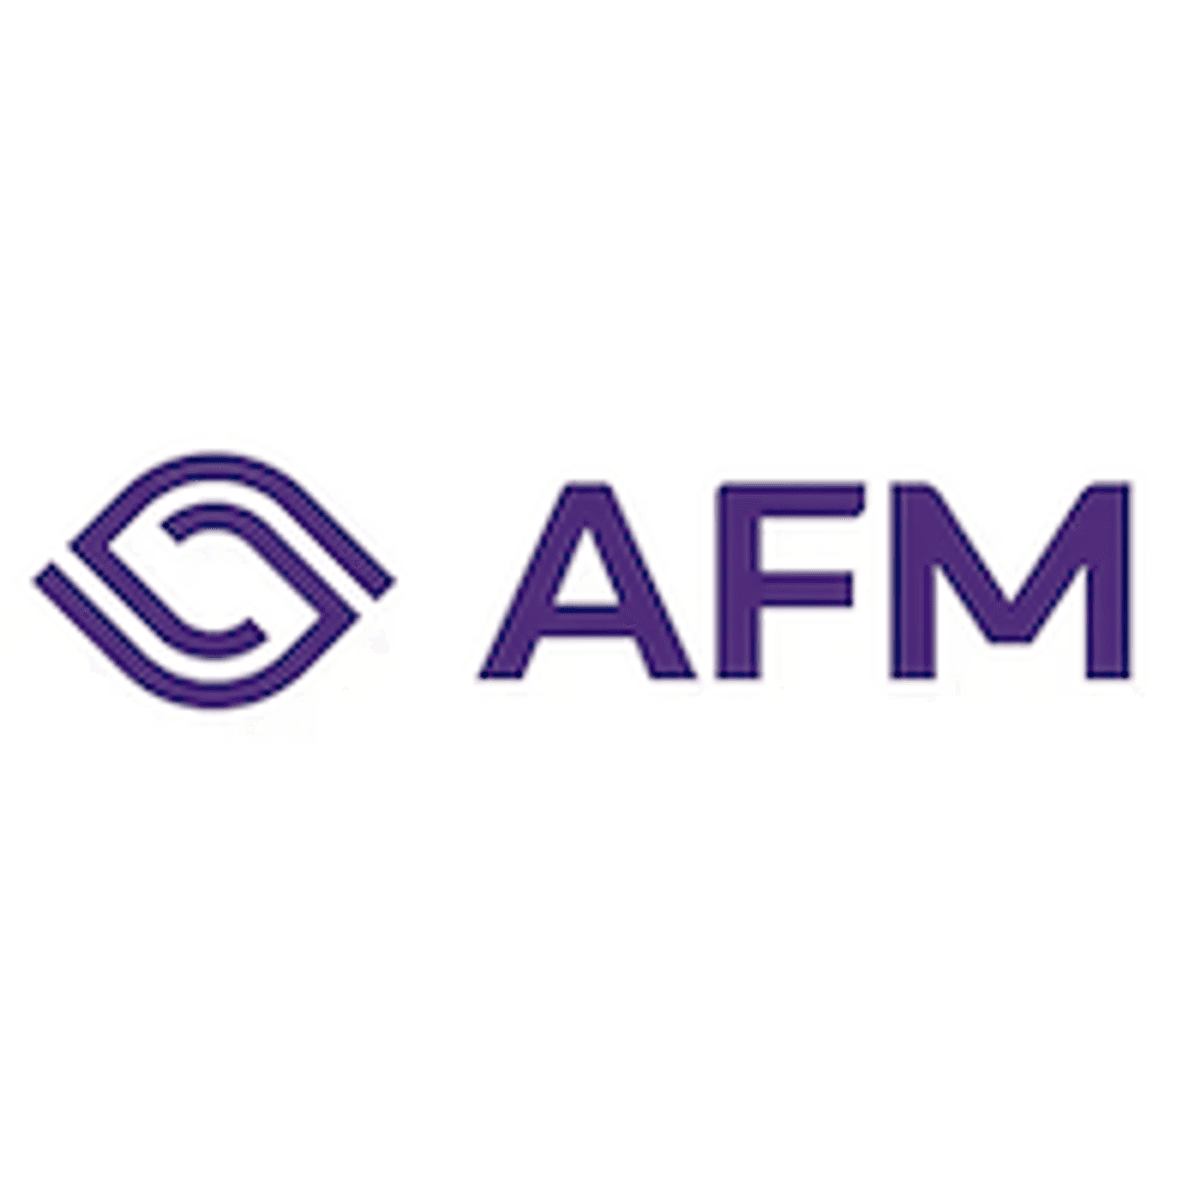 Azerion-topman Aytekin treedt tijdelijk terug als CEO vanwege AFM-onderzoek image